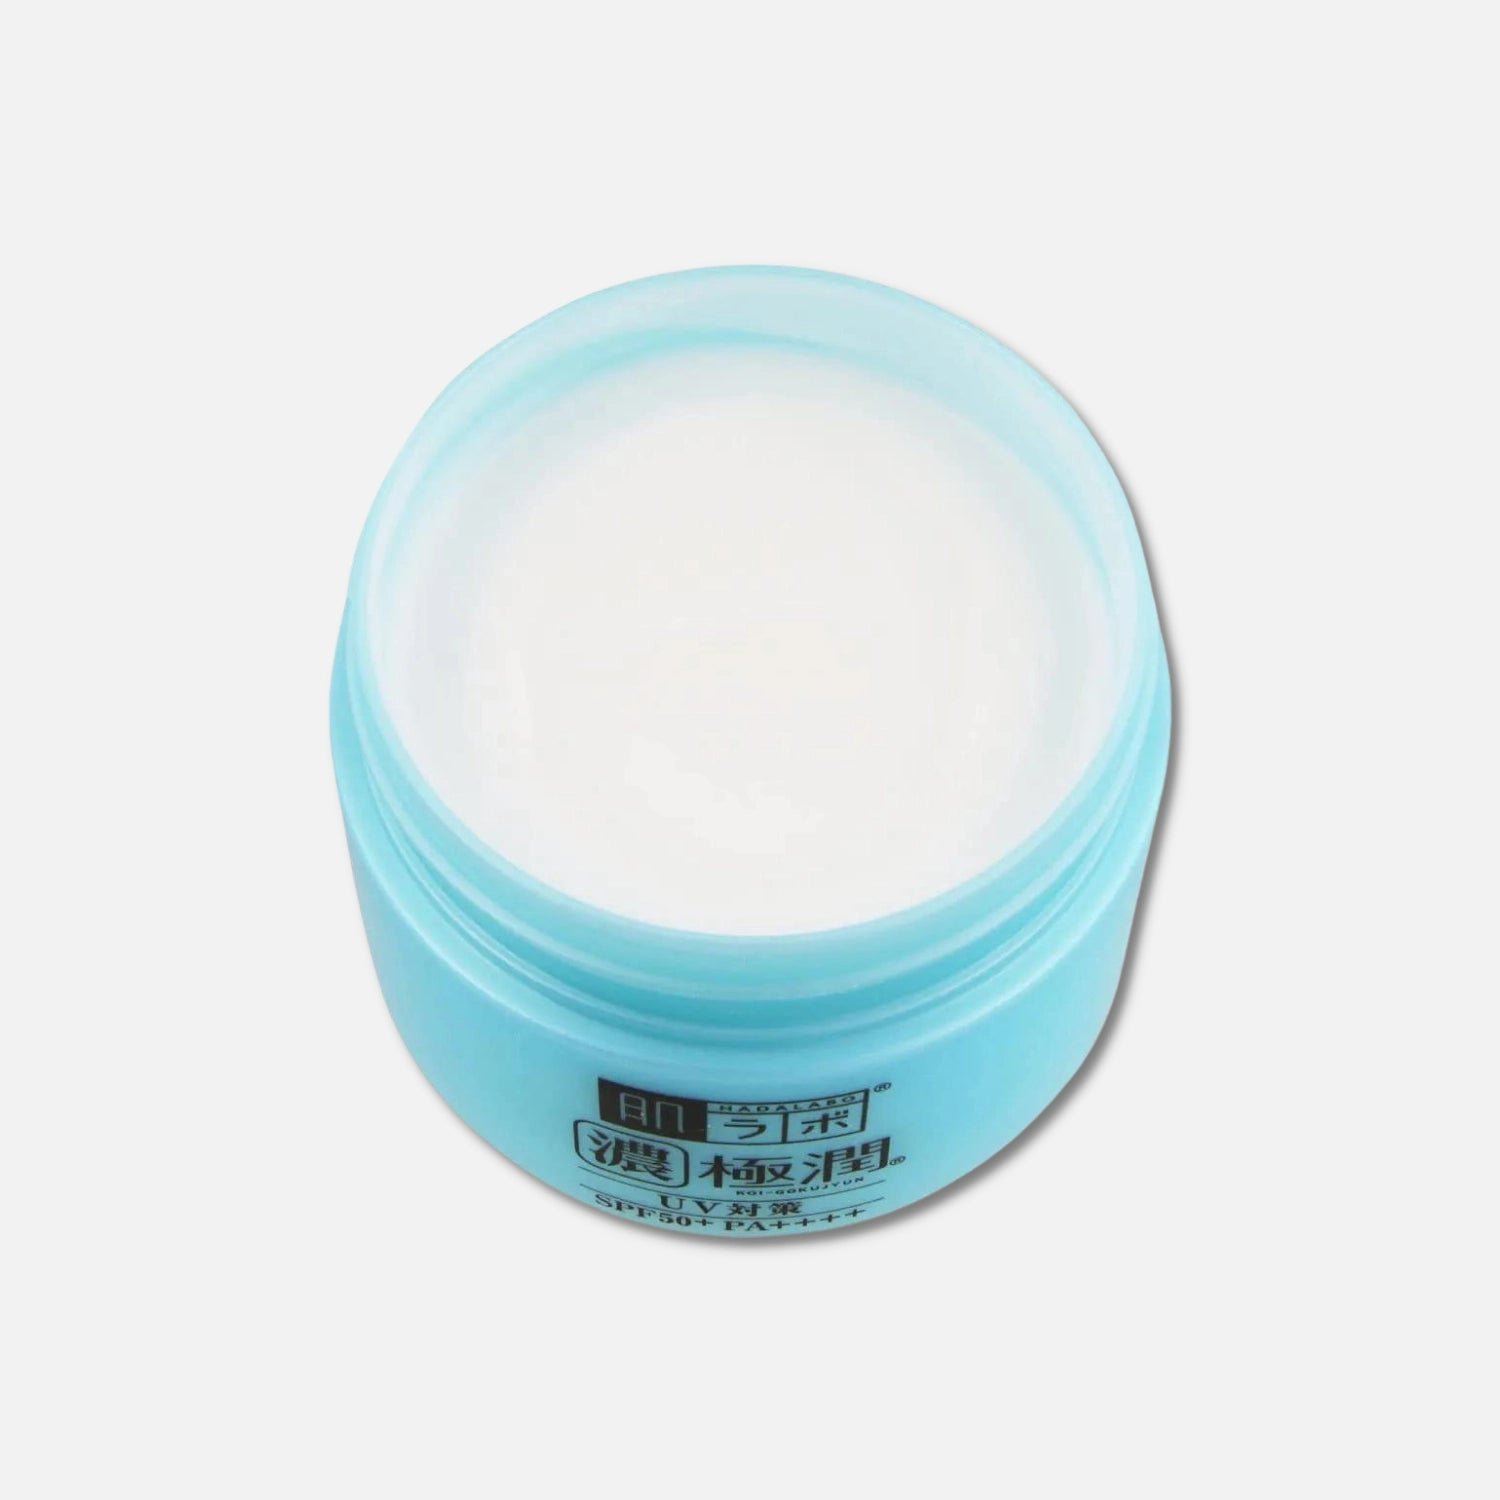 Hada Labo UV Gel Cream SPF 50+ PA++++ 90g - Buy Me Japan